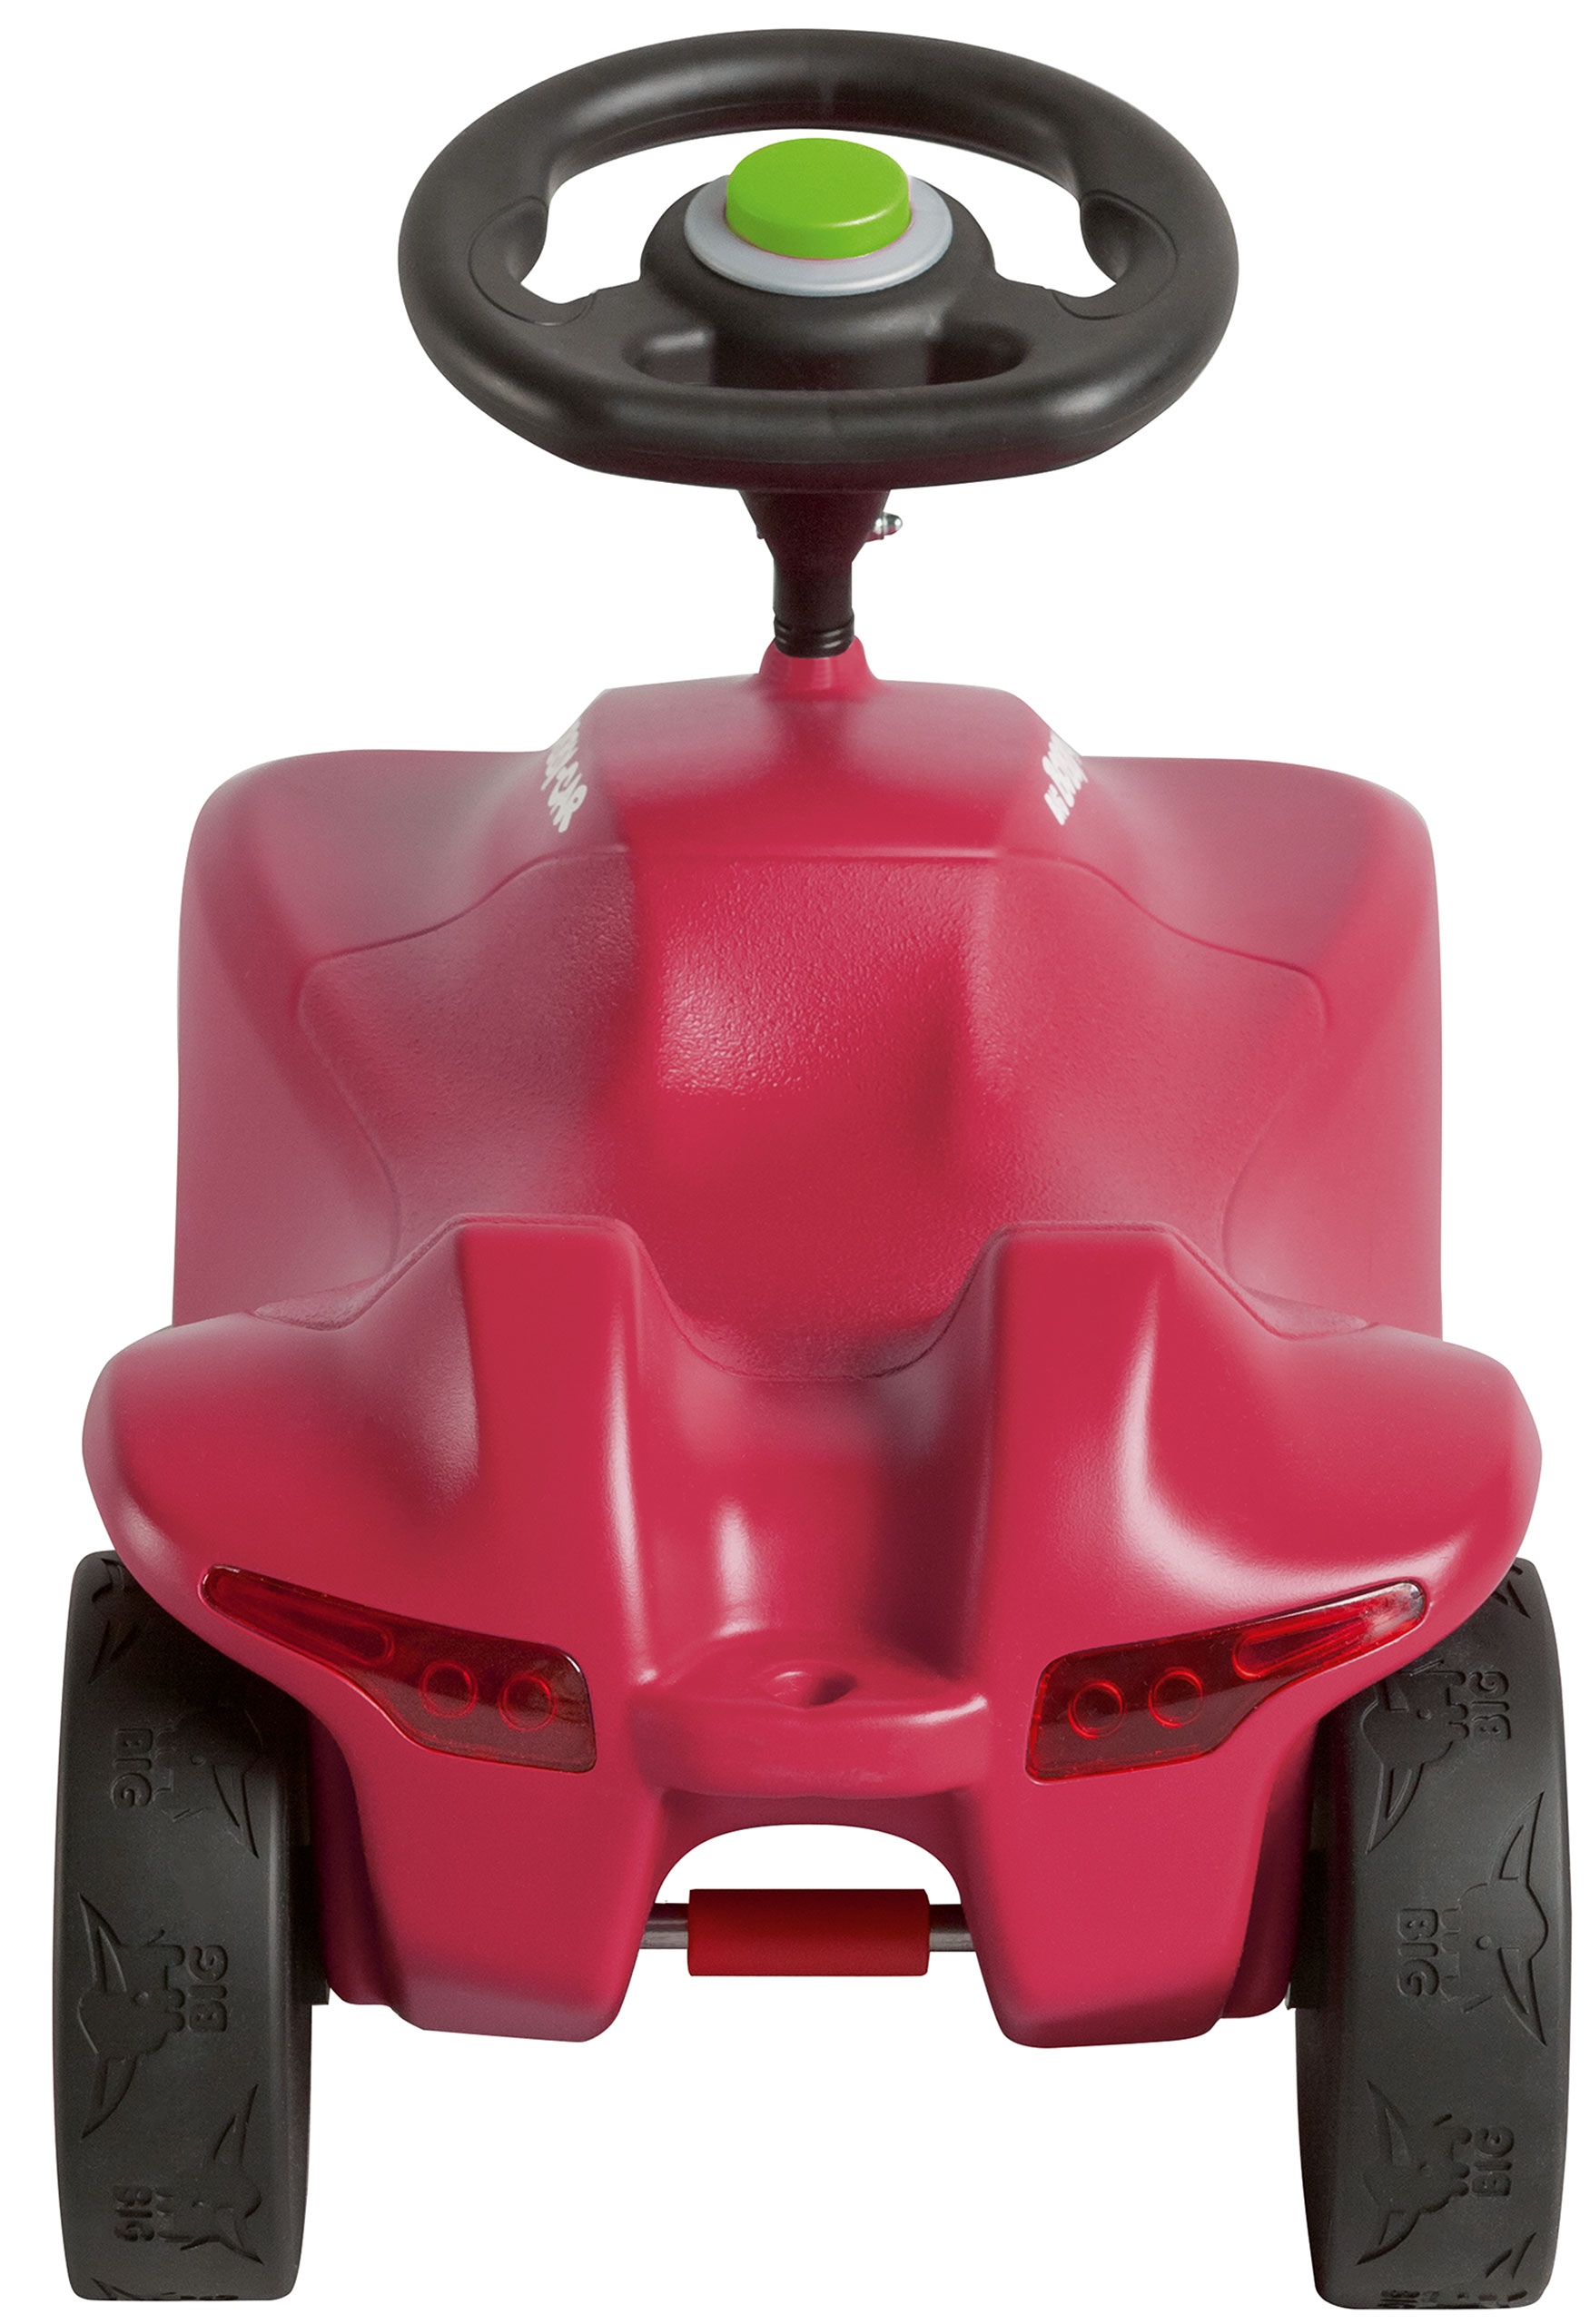 Różowy jeździk bobby car neo pink, zabawka dla dzieci, Big